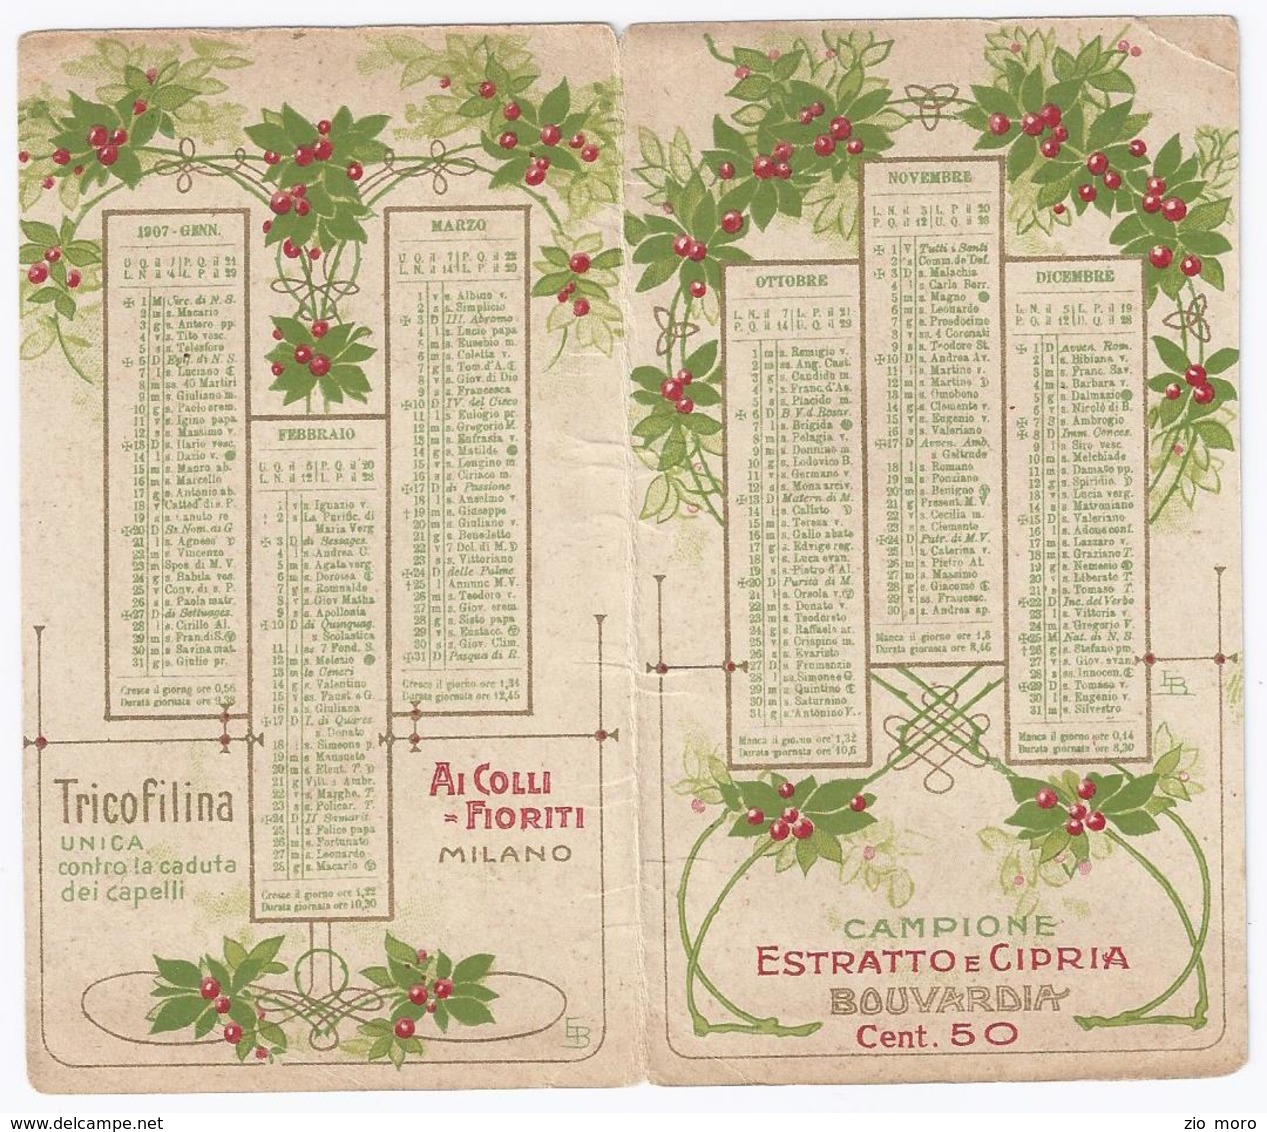 Splendido Calendario Da Tasca Liberty 1907 Ai Colli Fioriti - Milano - Estratto E Cipria BOUVARDIA - Small : 1901-20